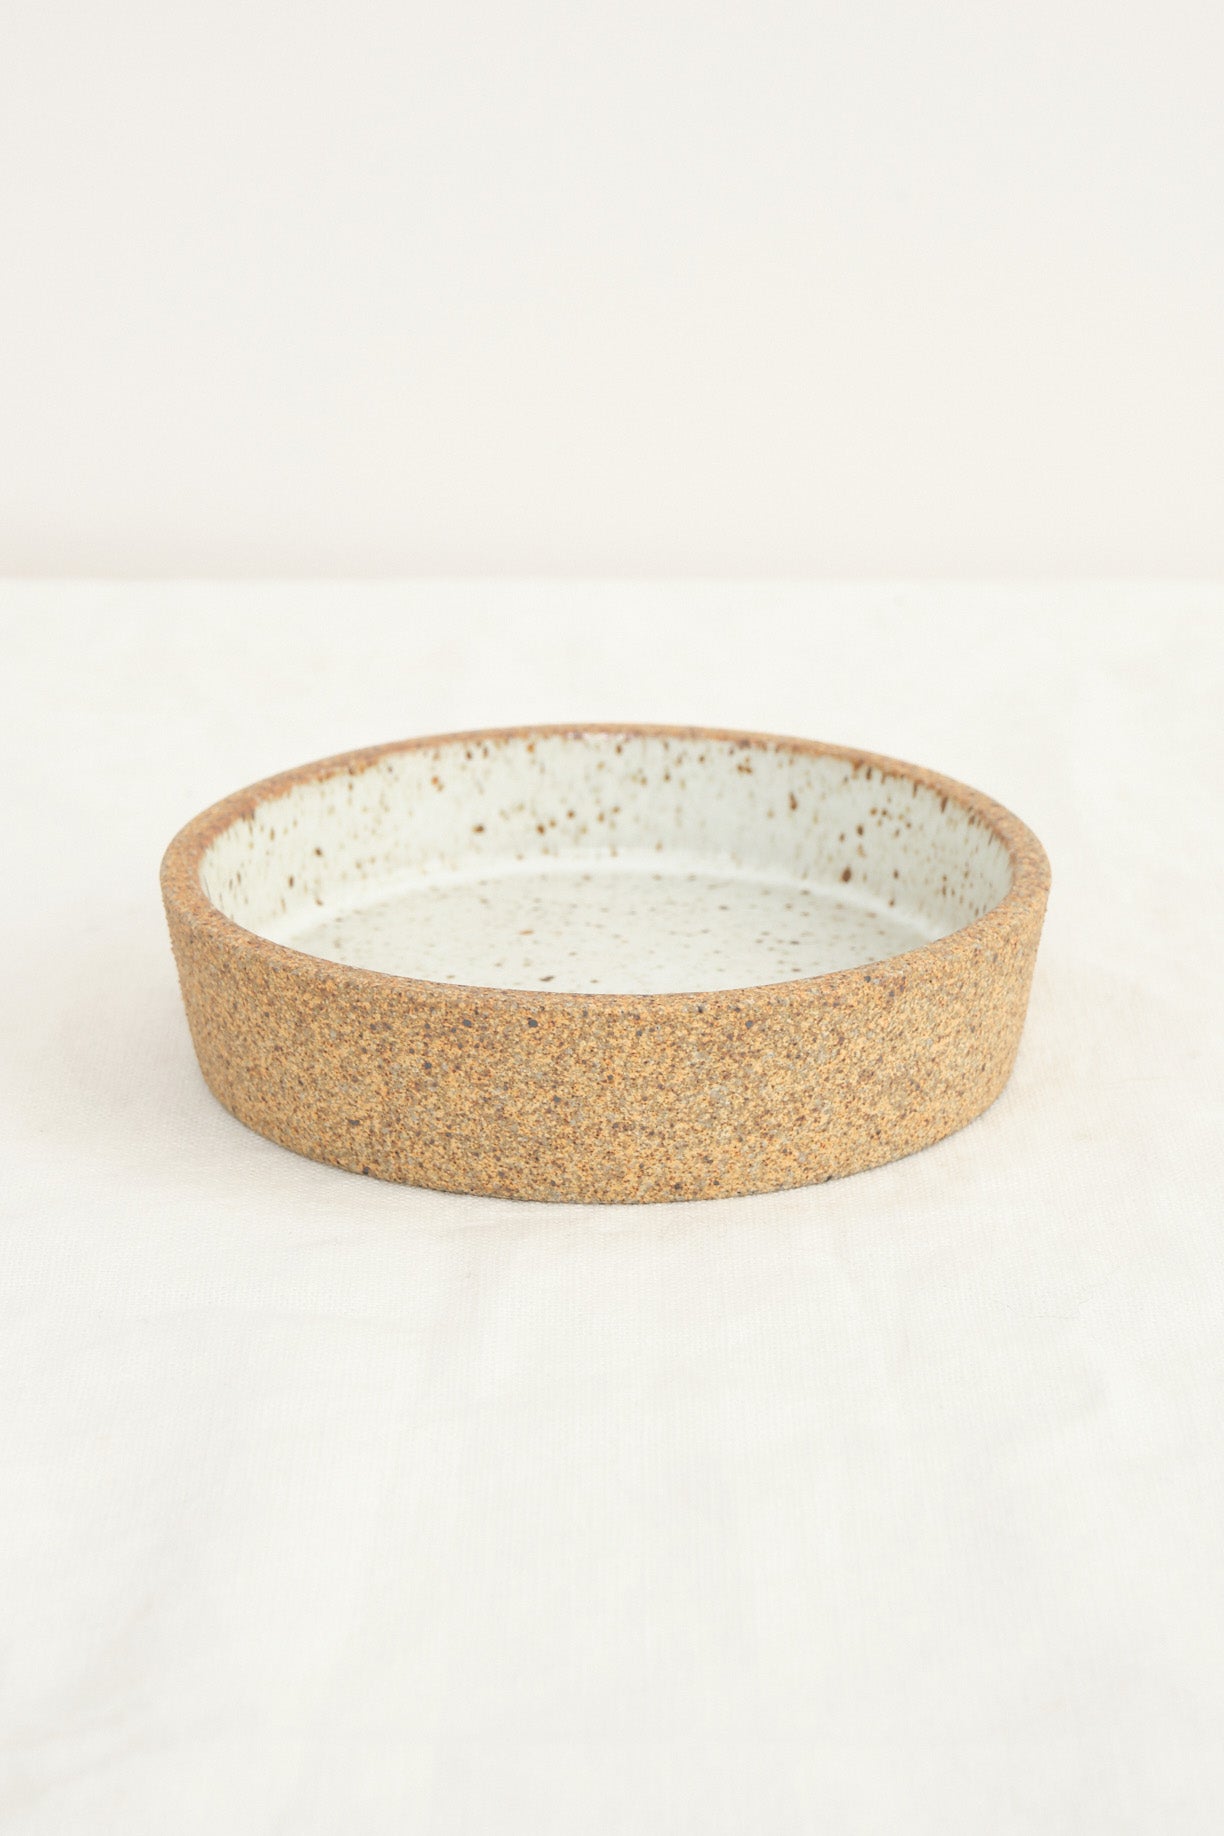 Humble Ceramics Cazuelita ceramic bowl